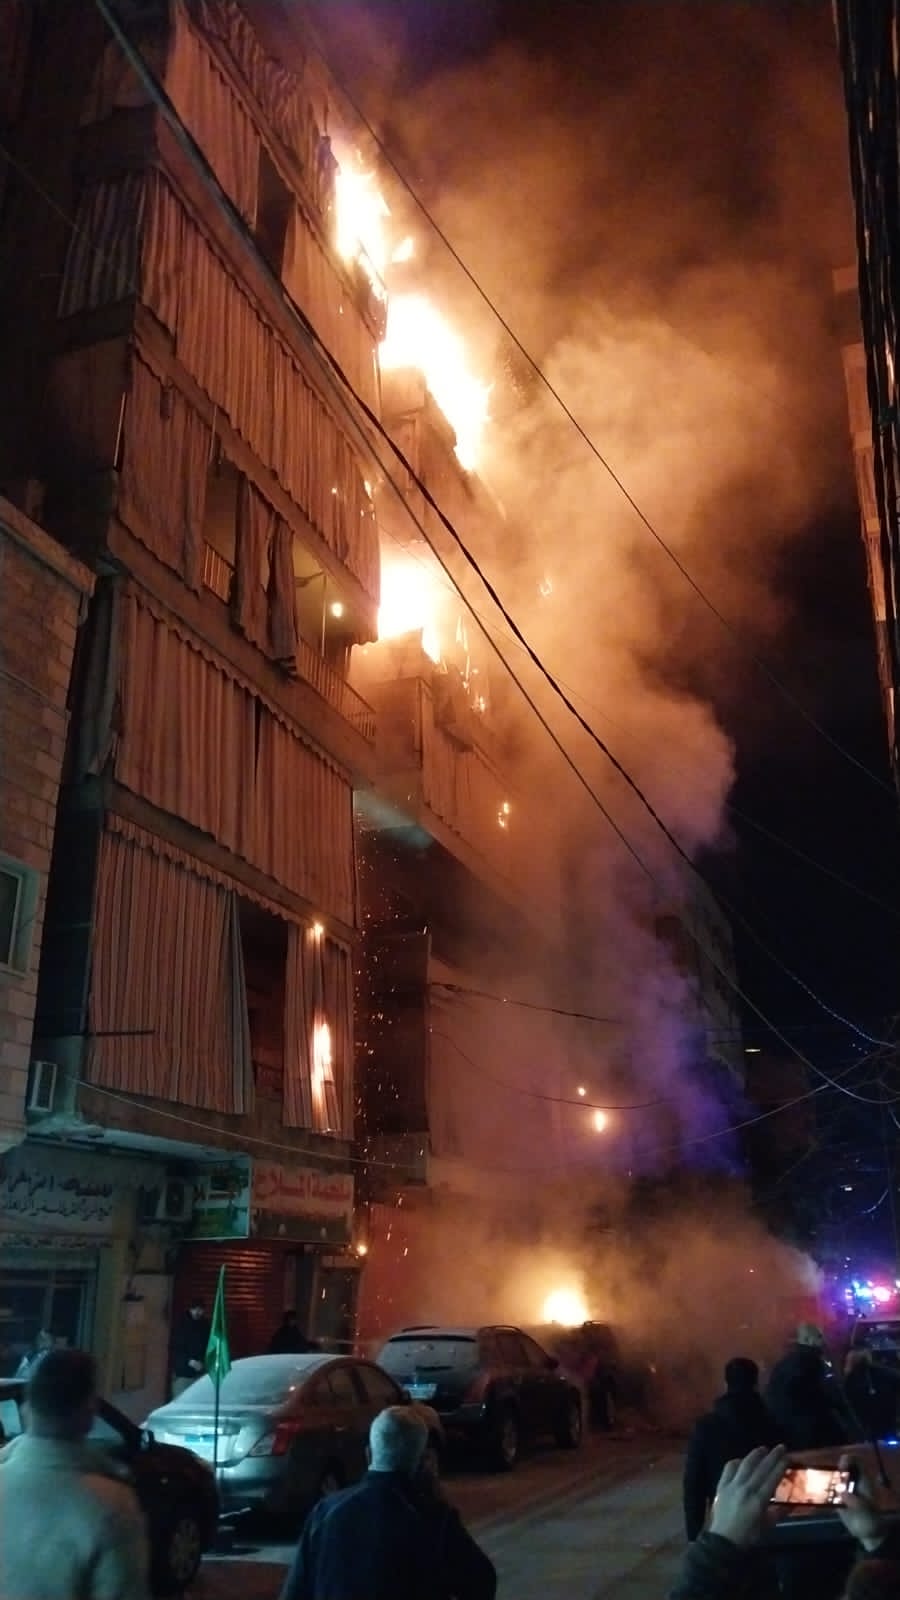 بالفيديو - حريق كبير داخل شقة سكنية في الشياح!